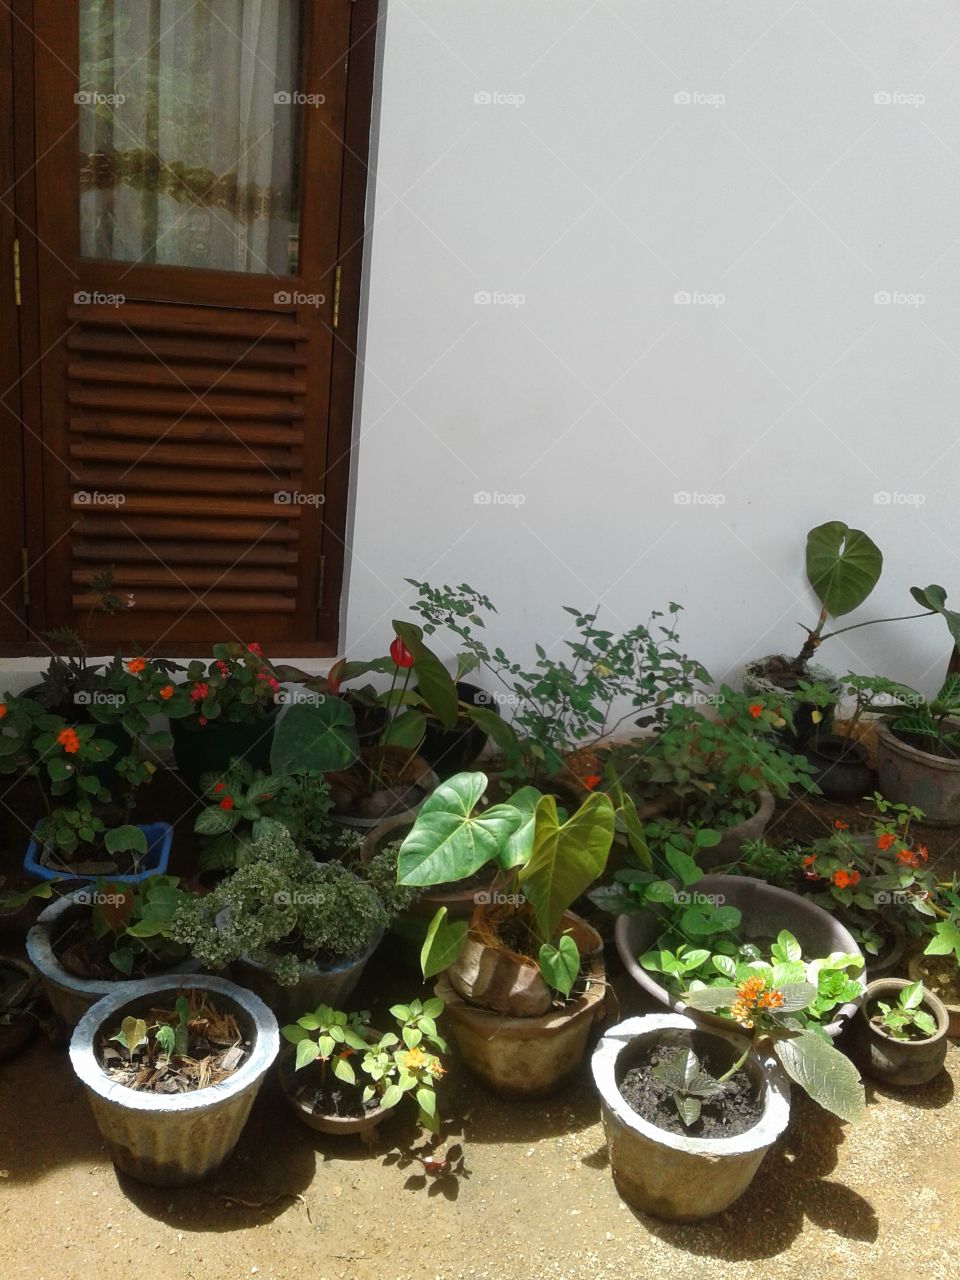 plants near the window with lighten by sunlight